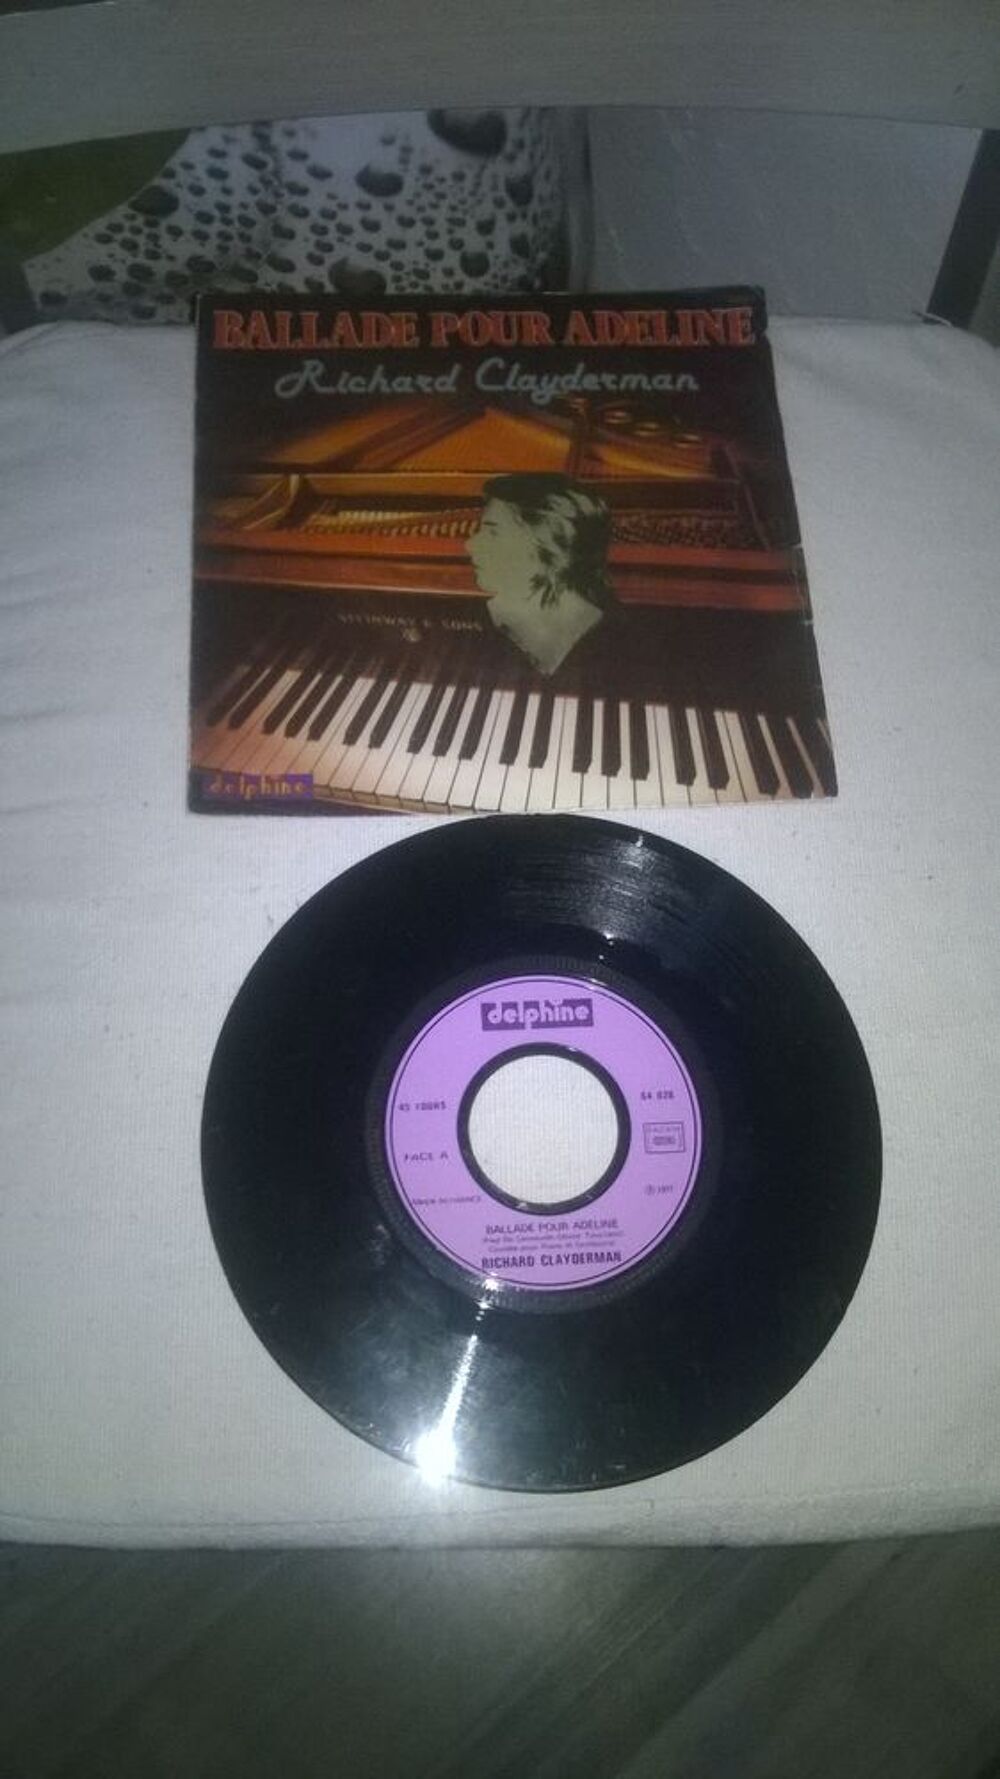 Vinyle 45 T Richard Clayderman
Ballade Pour Adeline
1977
CD et vinyles